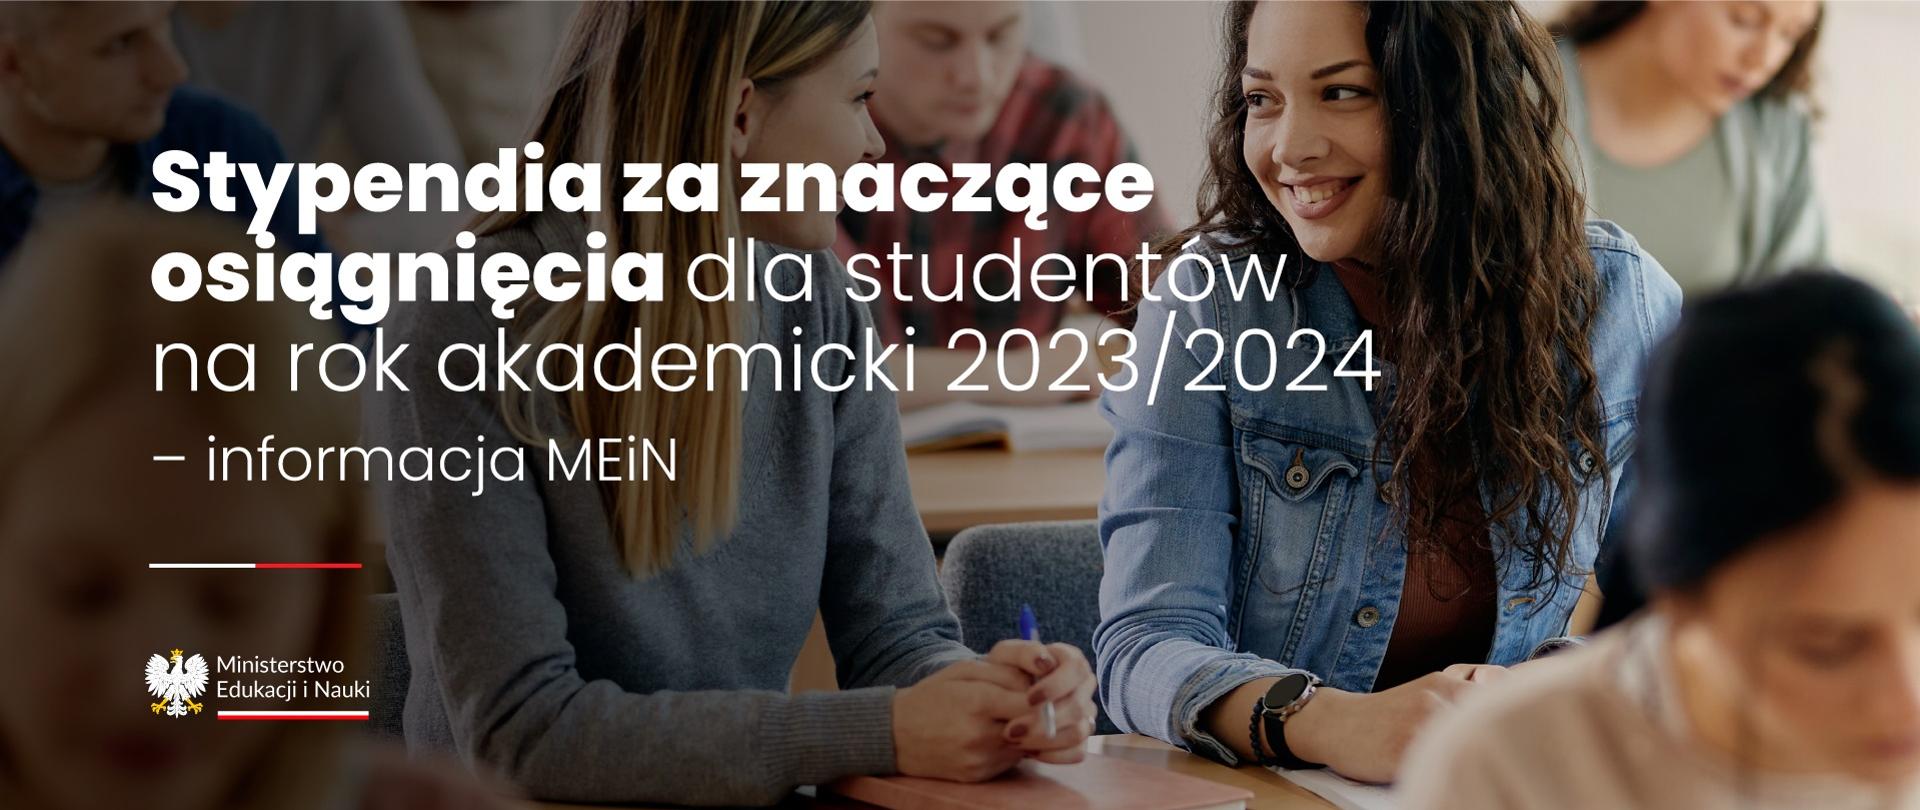 Uśmiechnięte studentki siedzą przy stoliku, obok napis Stypendia dla studentów za znaczące osiągnięcia naukowe, artystyczne i sportowe na rok akademicki 2023/2024.